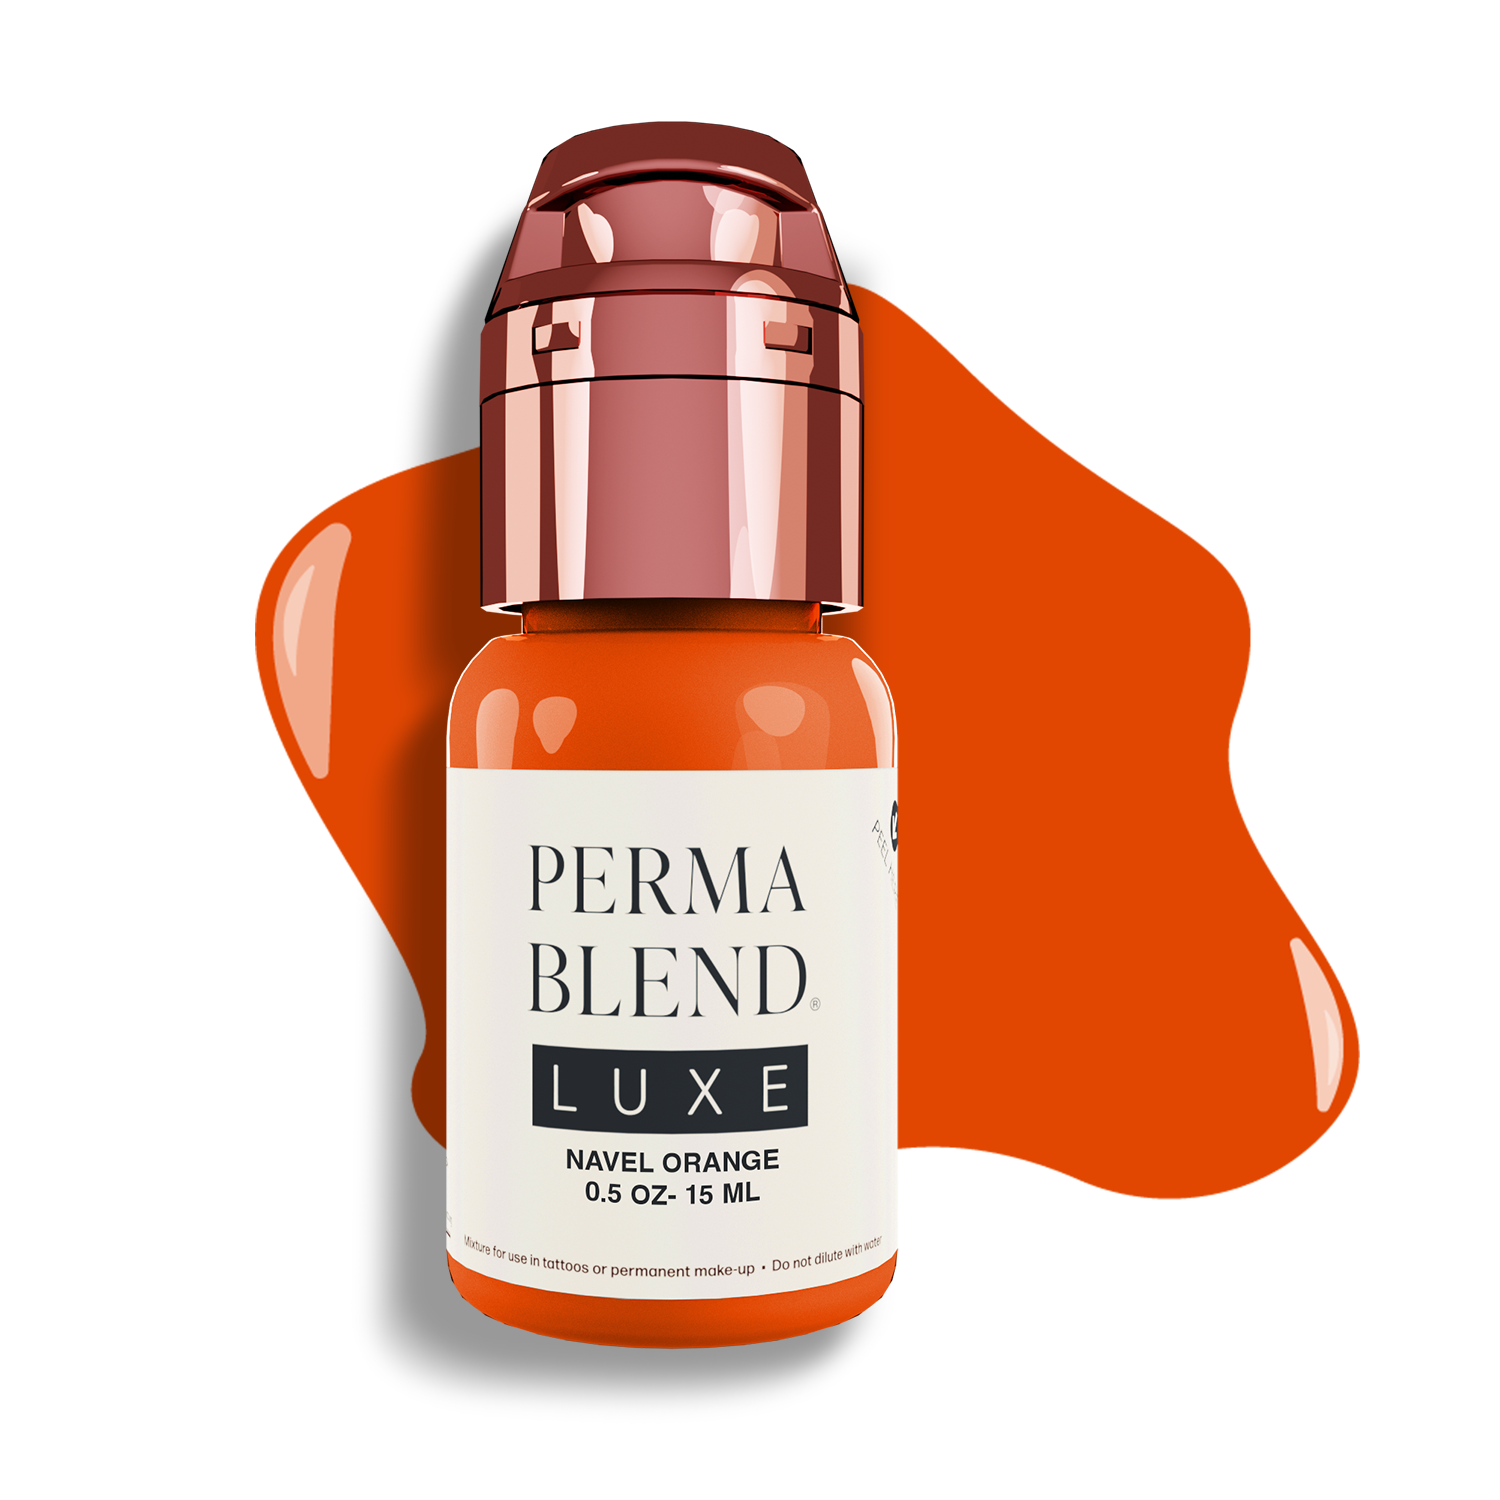 Perma Blend Luxe PMU Ink | Navel Orange | Korrektur | Brows